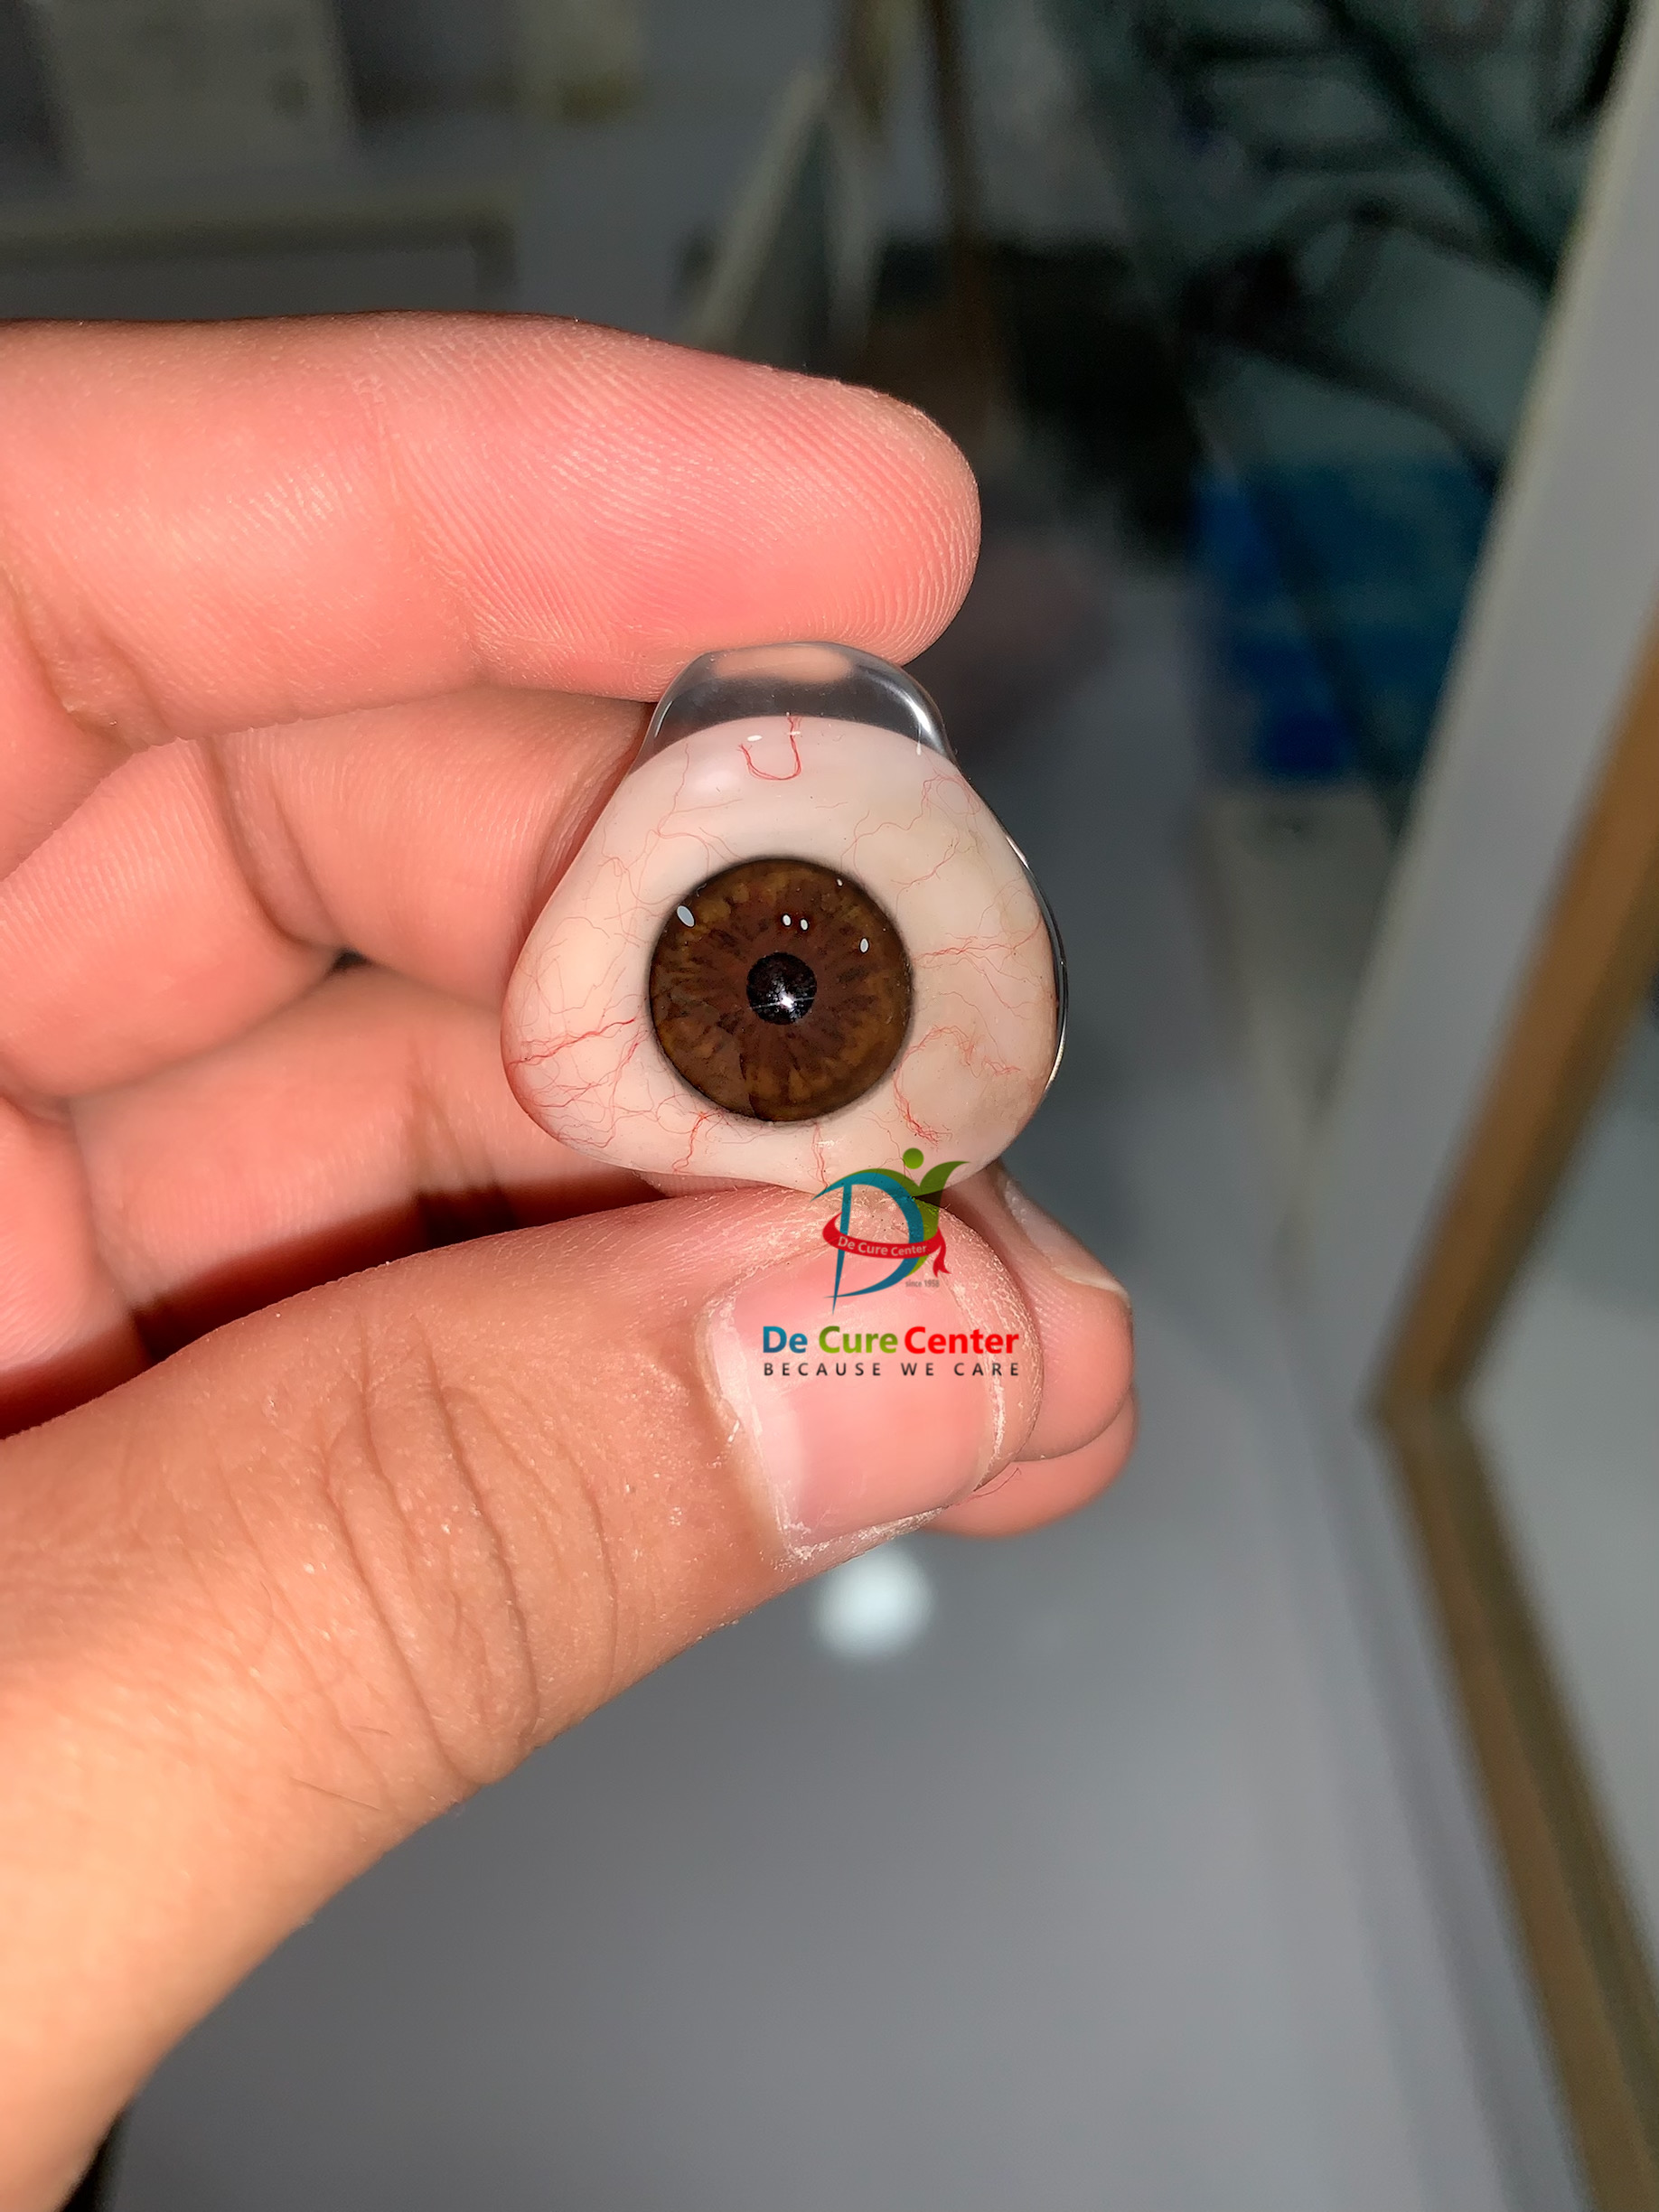 Custom Made Prosthetic Eye